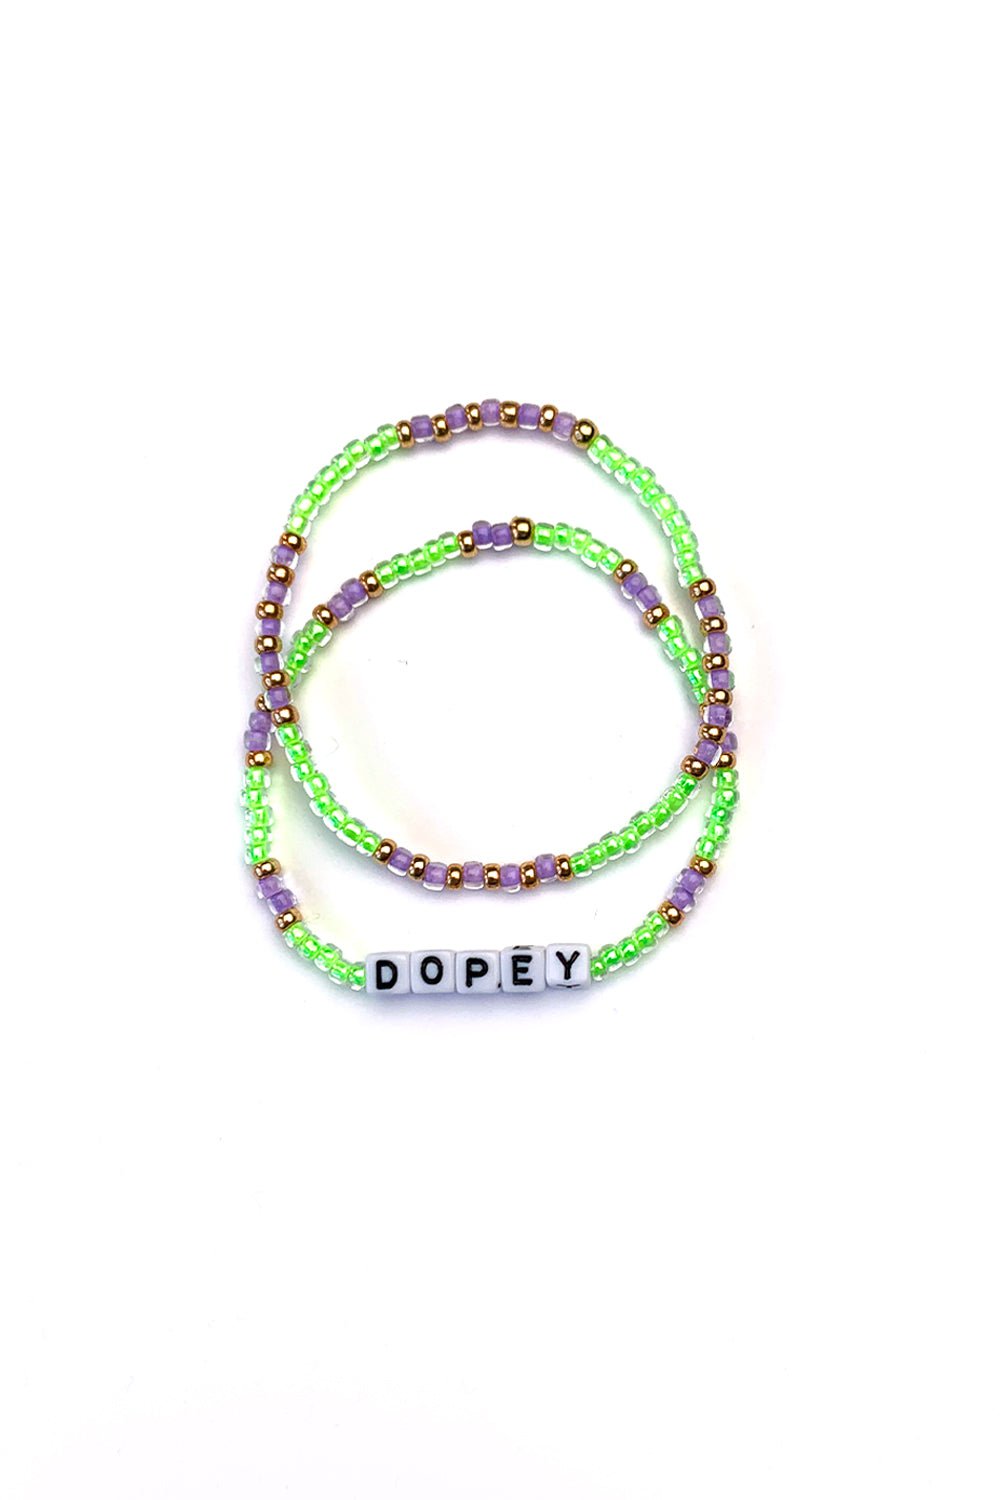 Sarah Marie Design Studio Bracelet 6.25" / Dopey + Stacker Dopey Disney Inspired Bracelet